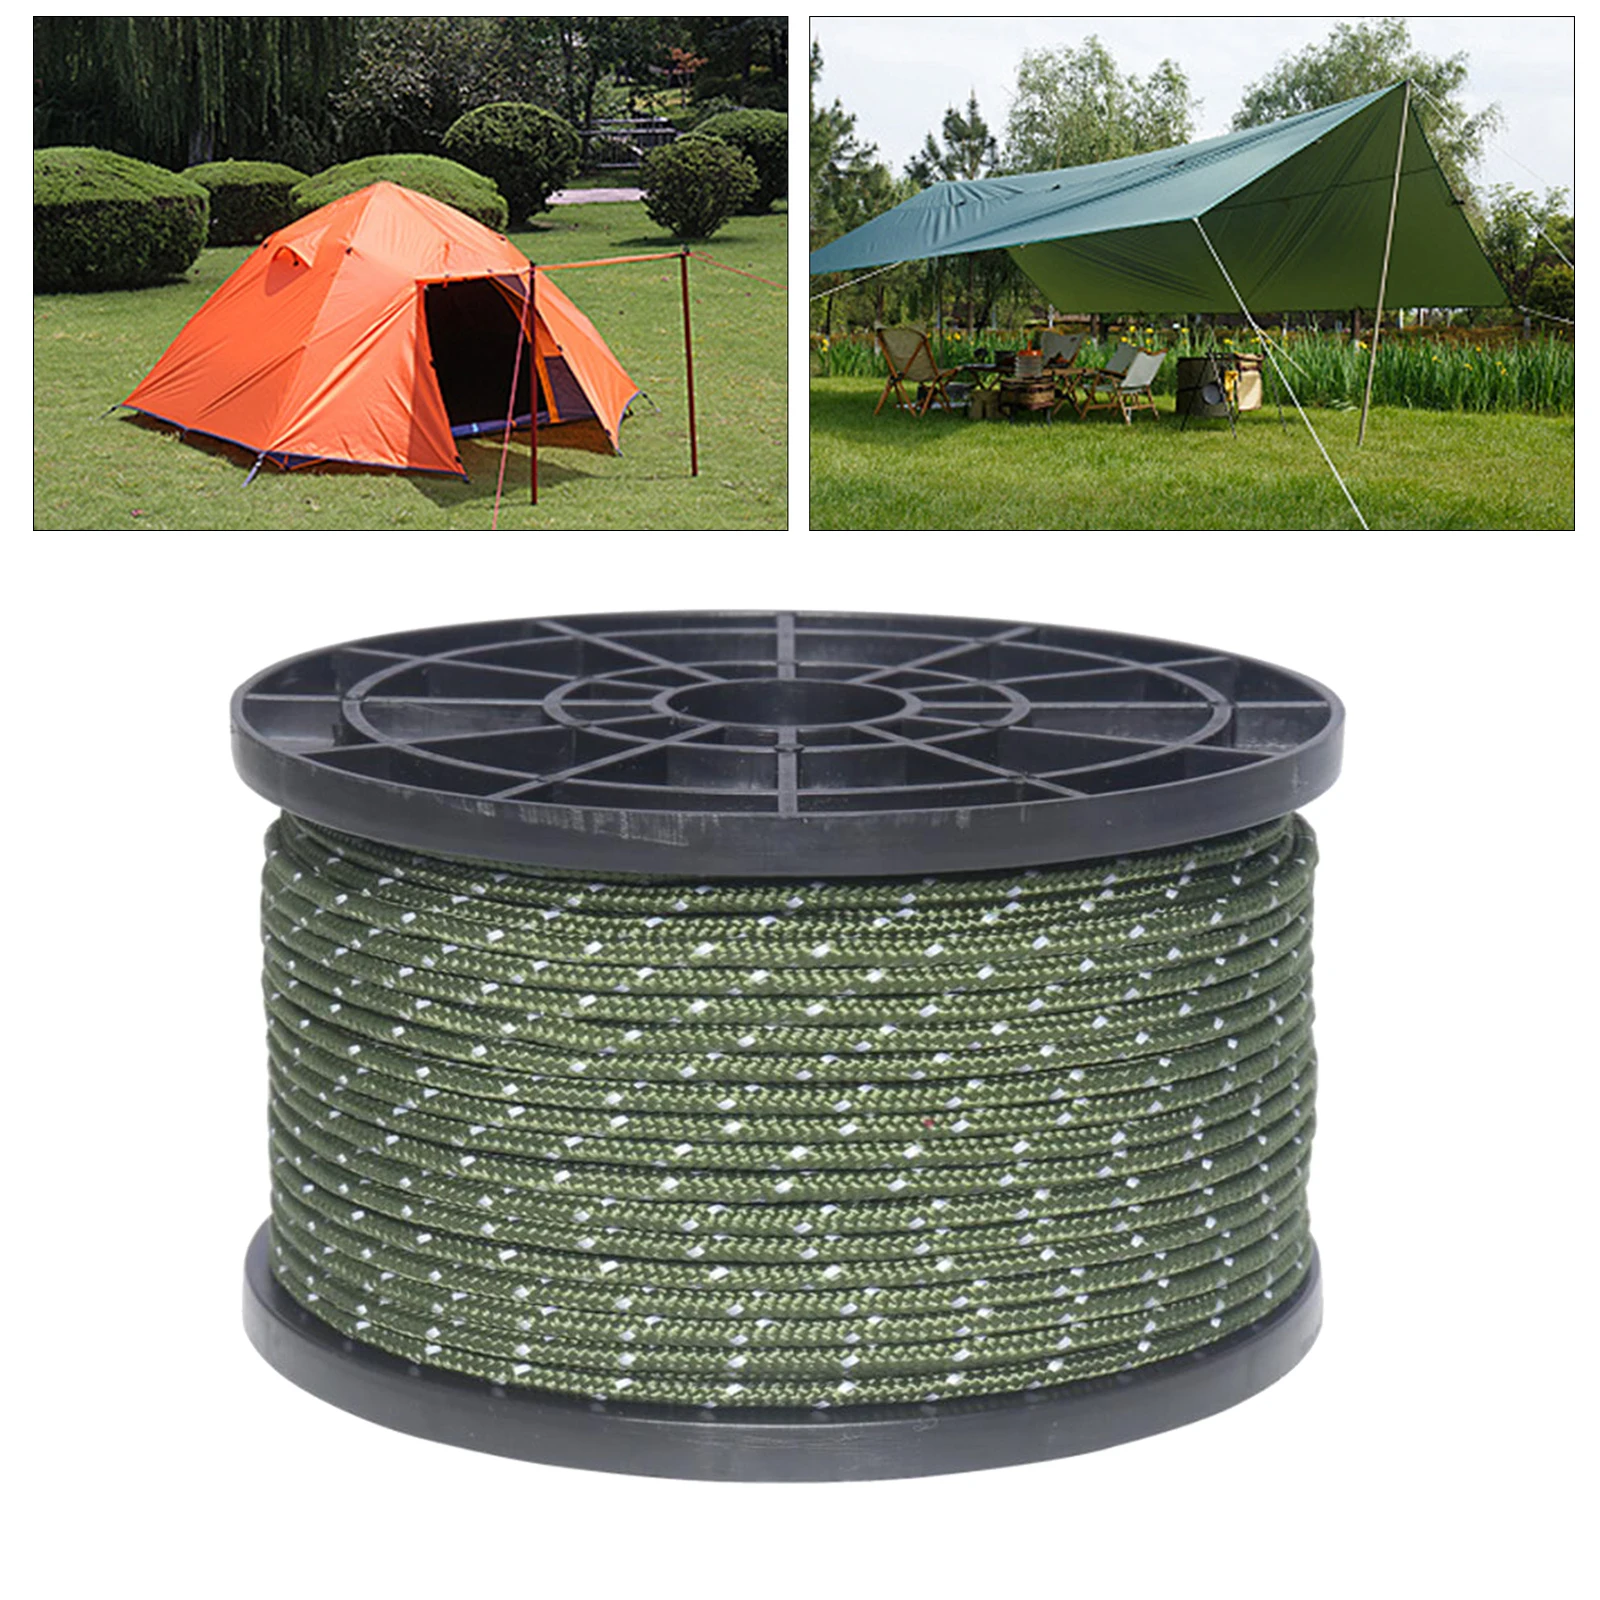 55 Yard Nylon Reflective Guyline Tent Tarp Rope Cord Hiking Accessories 3mm